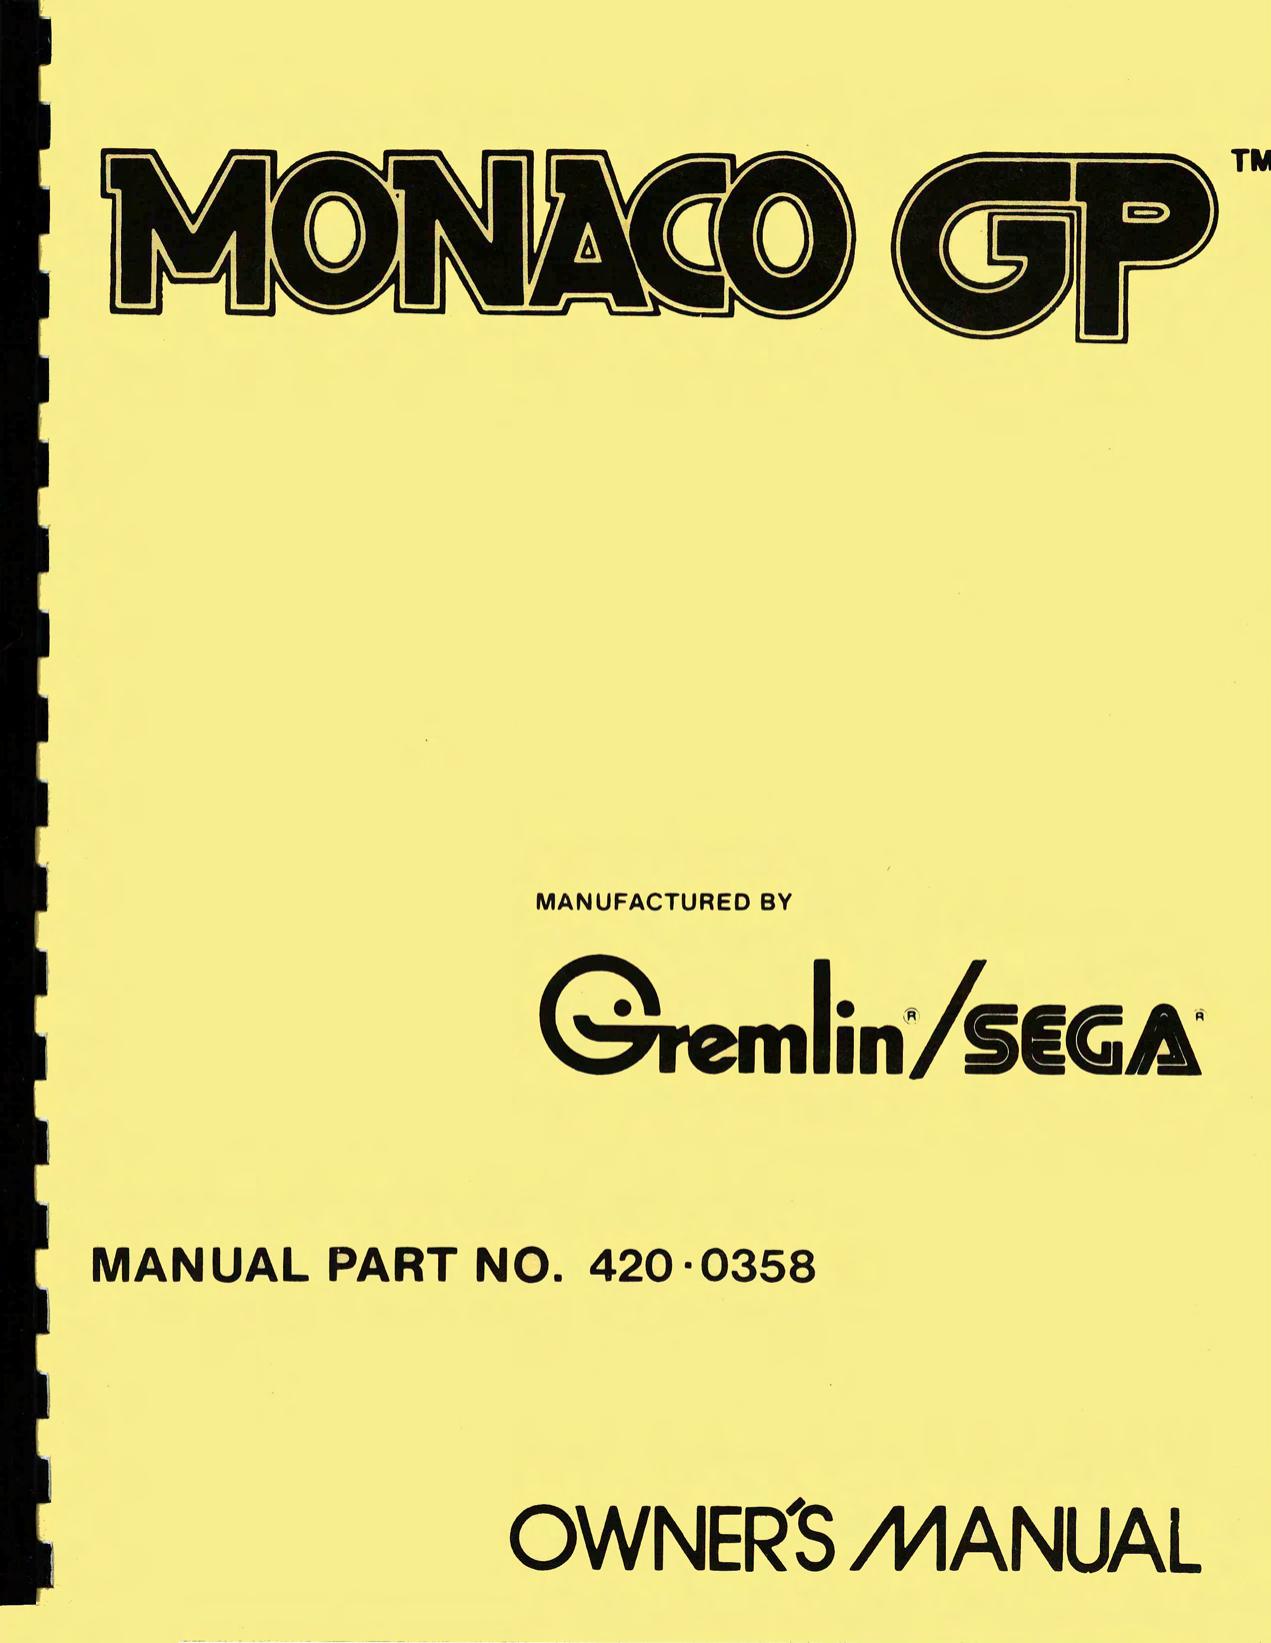 Monaco GP (420-0358)